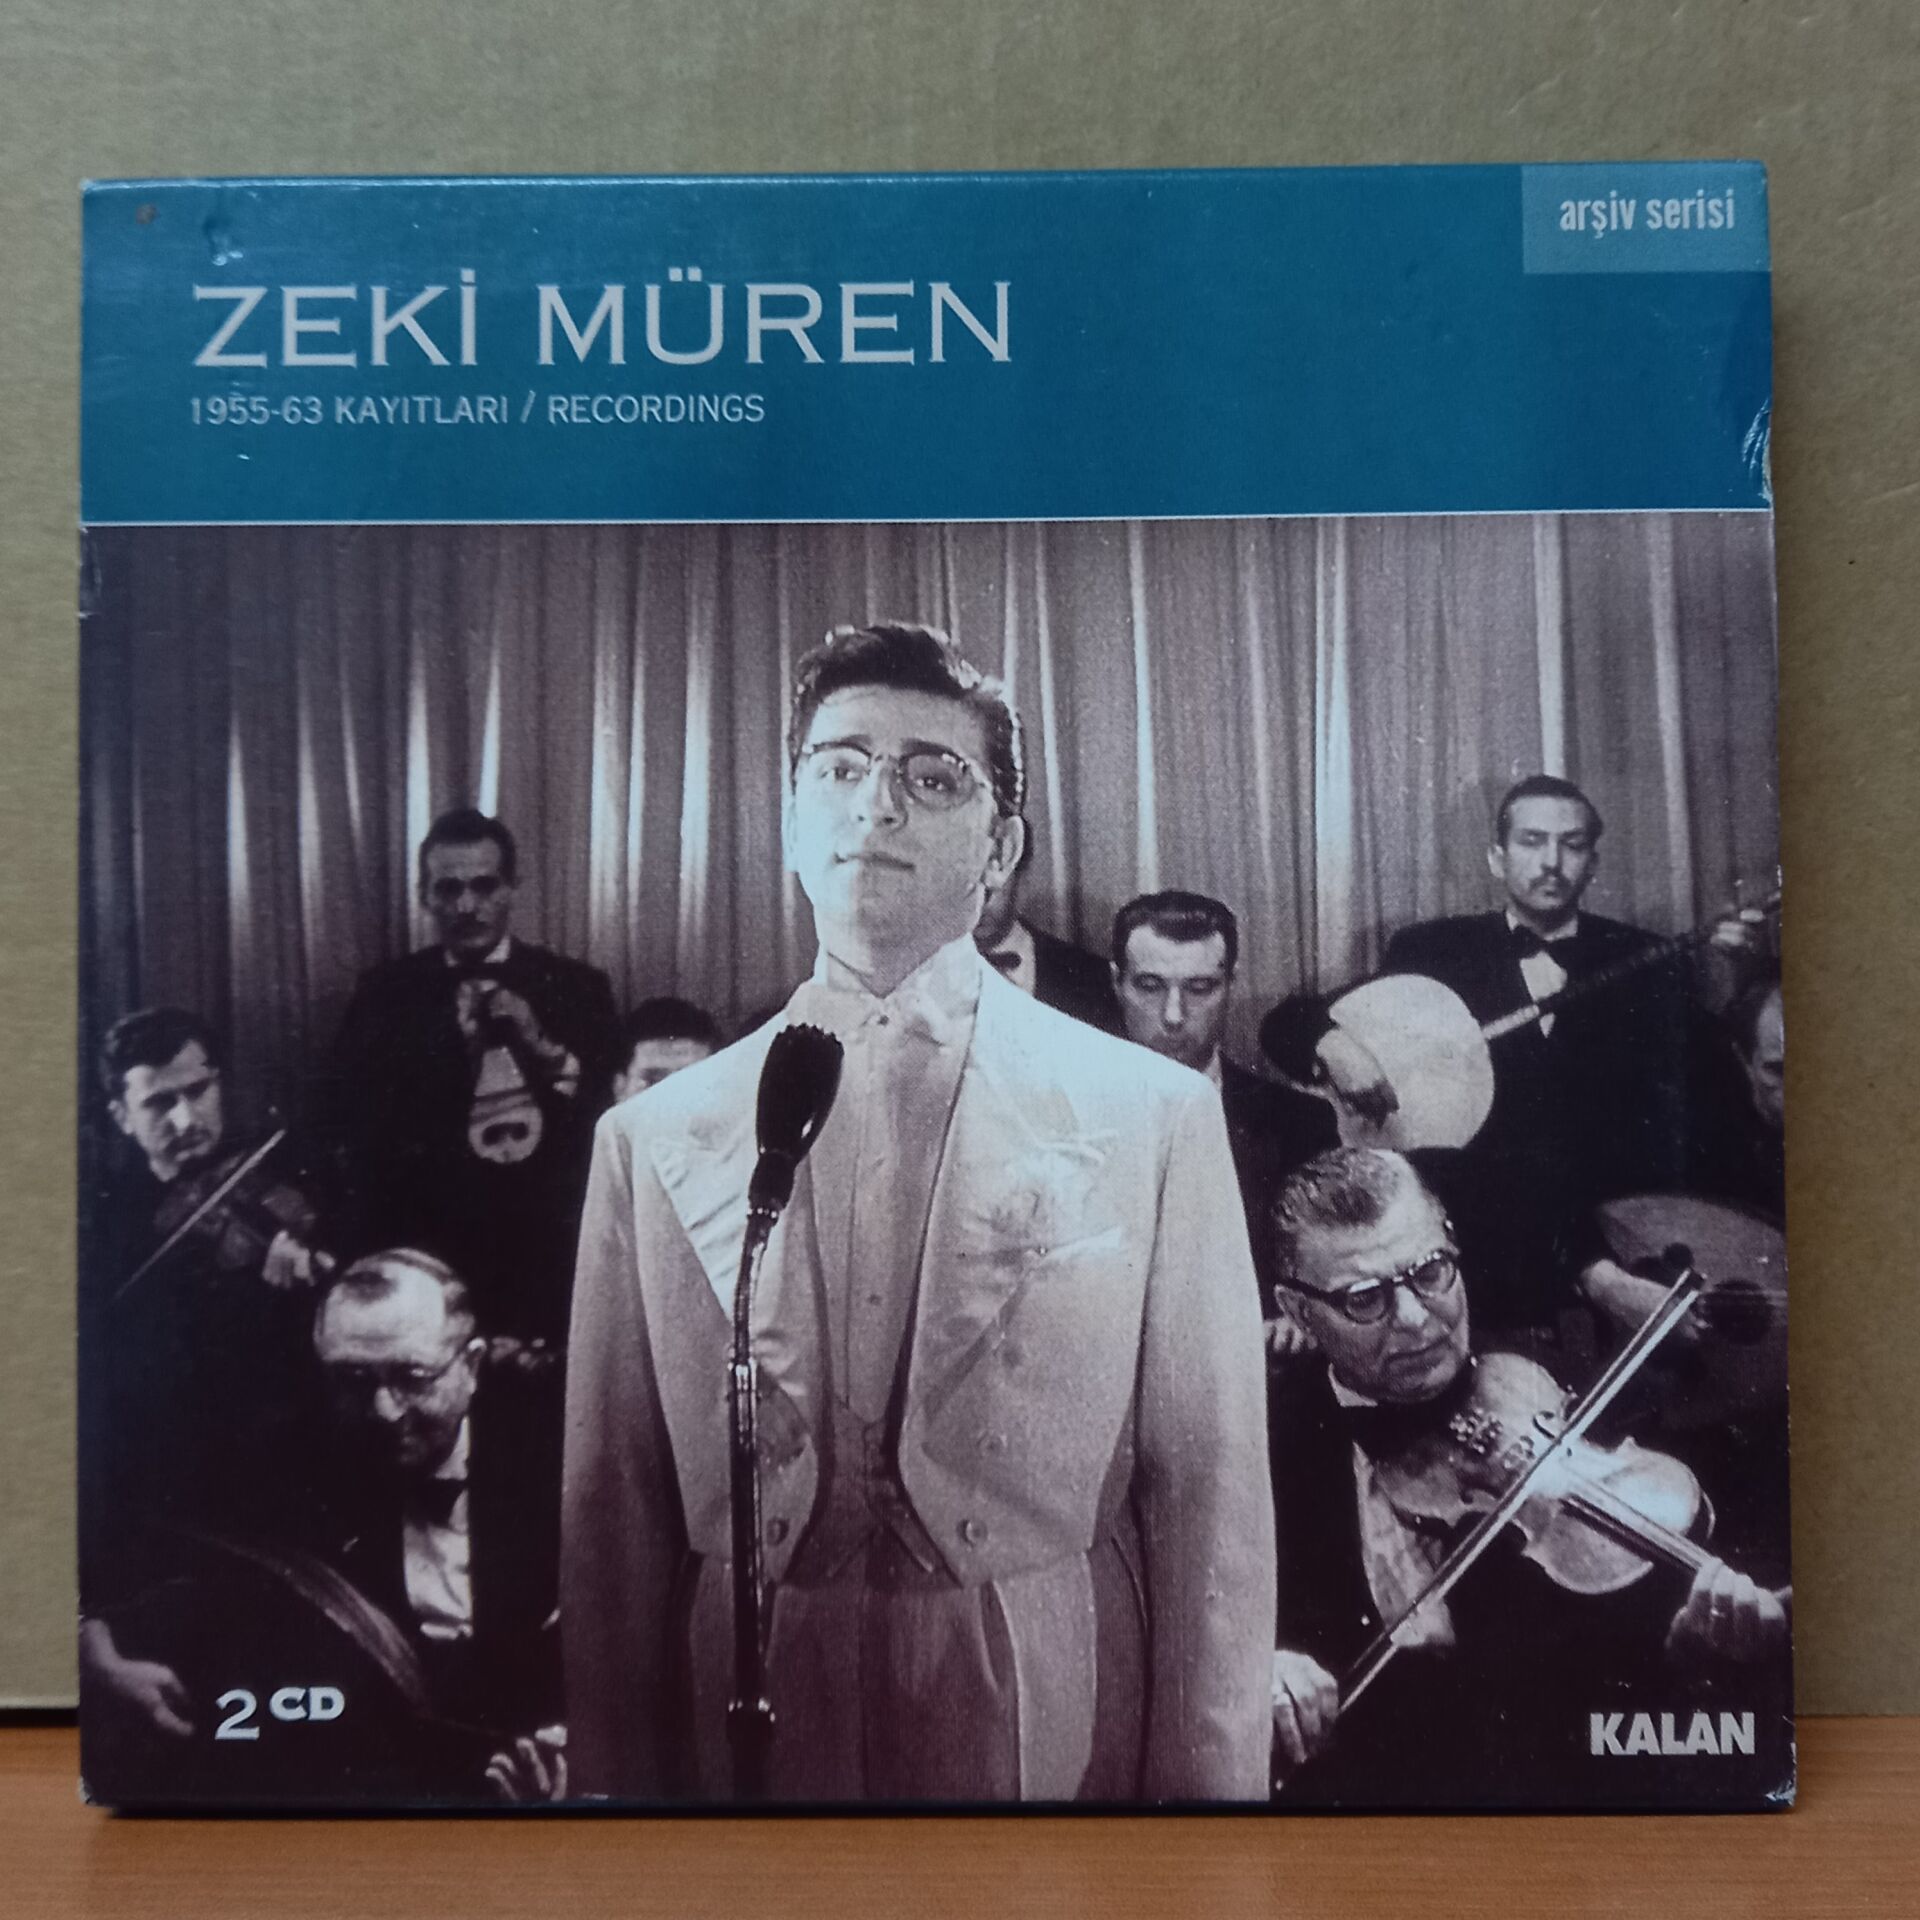 ZEKİ MÜREN - 1955-63 KAYITLARI (2002) - 2CD 2.EL